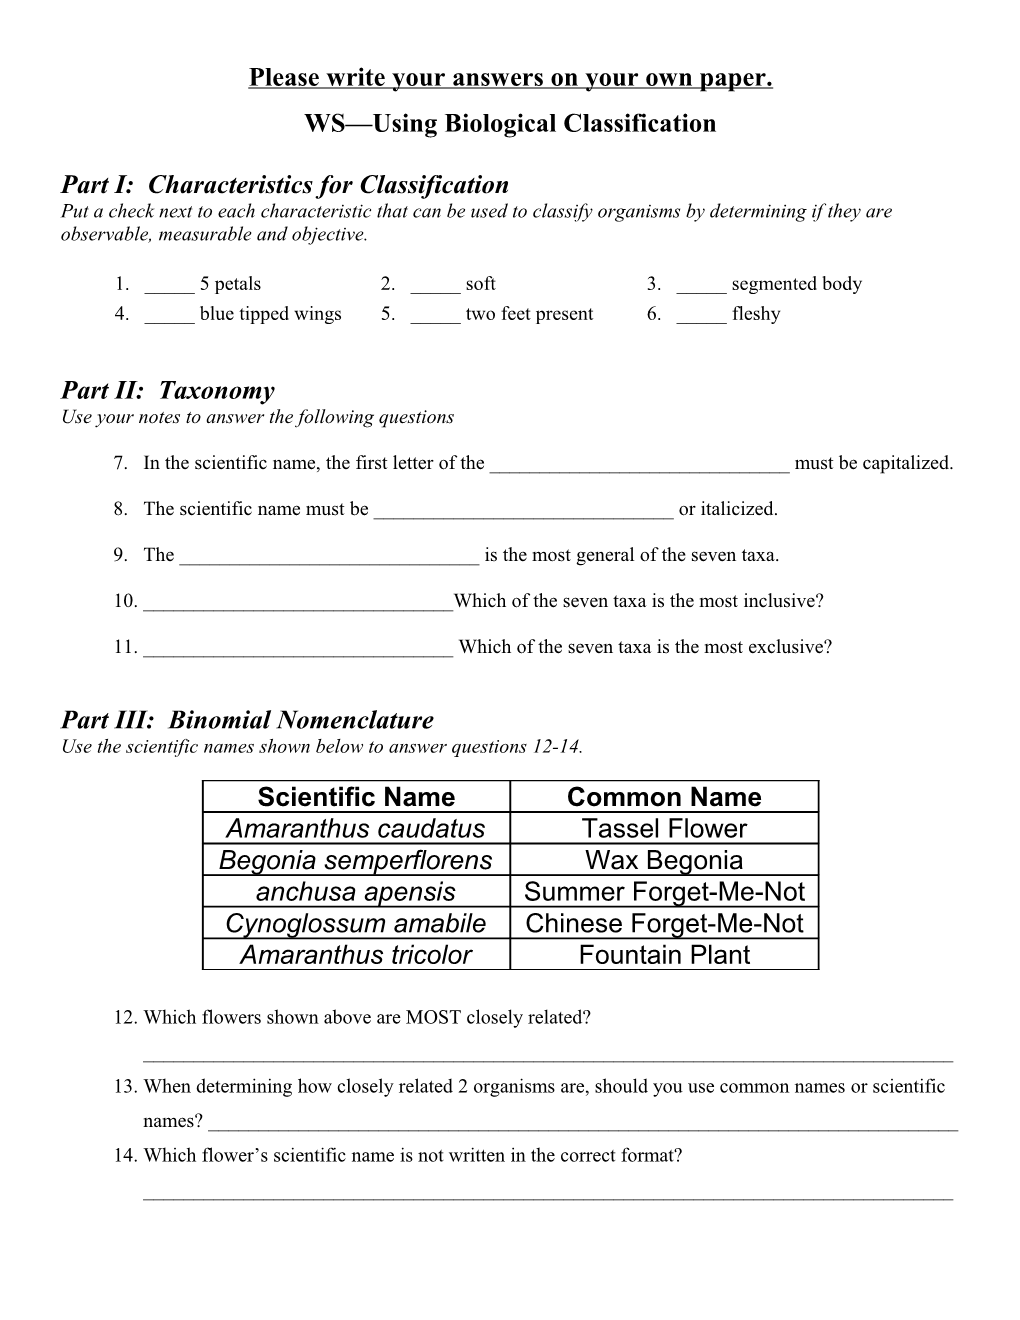 Part I: Characteristics for Classification